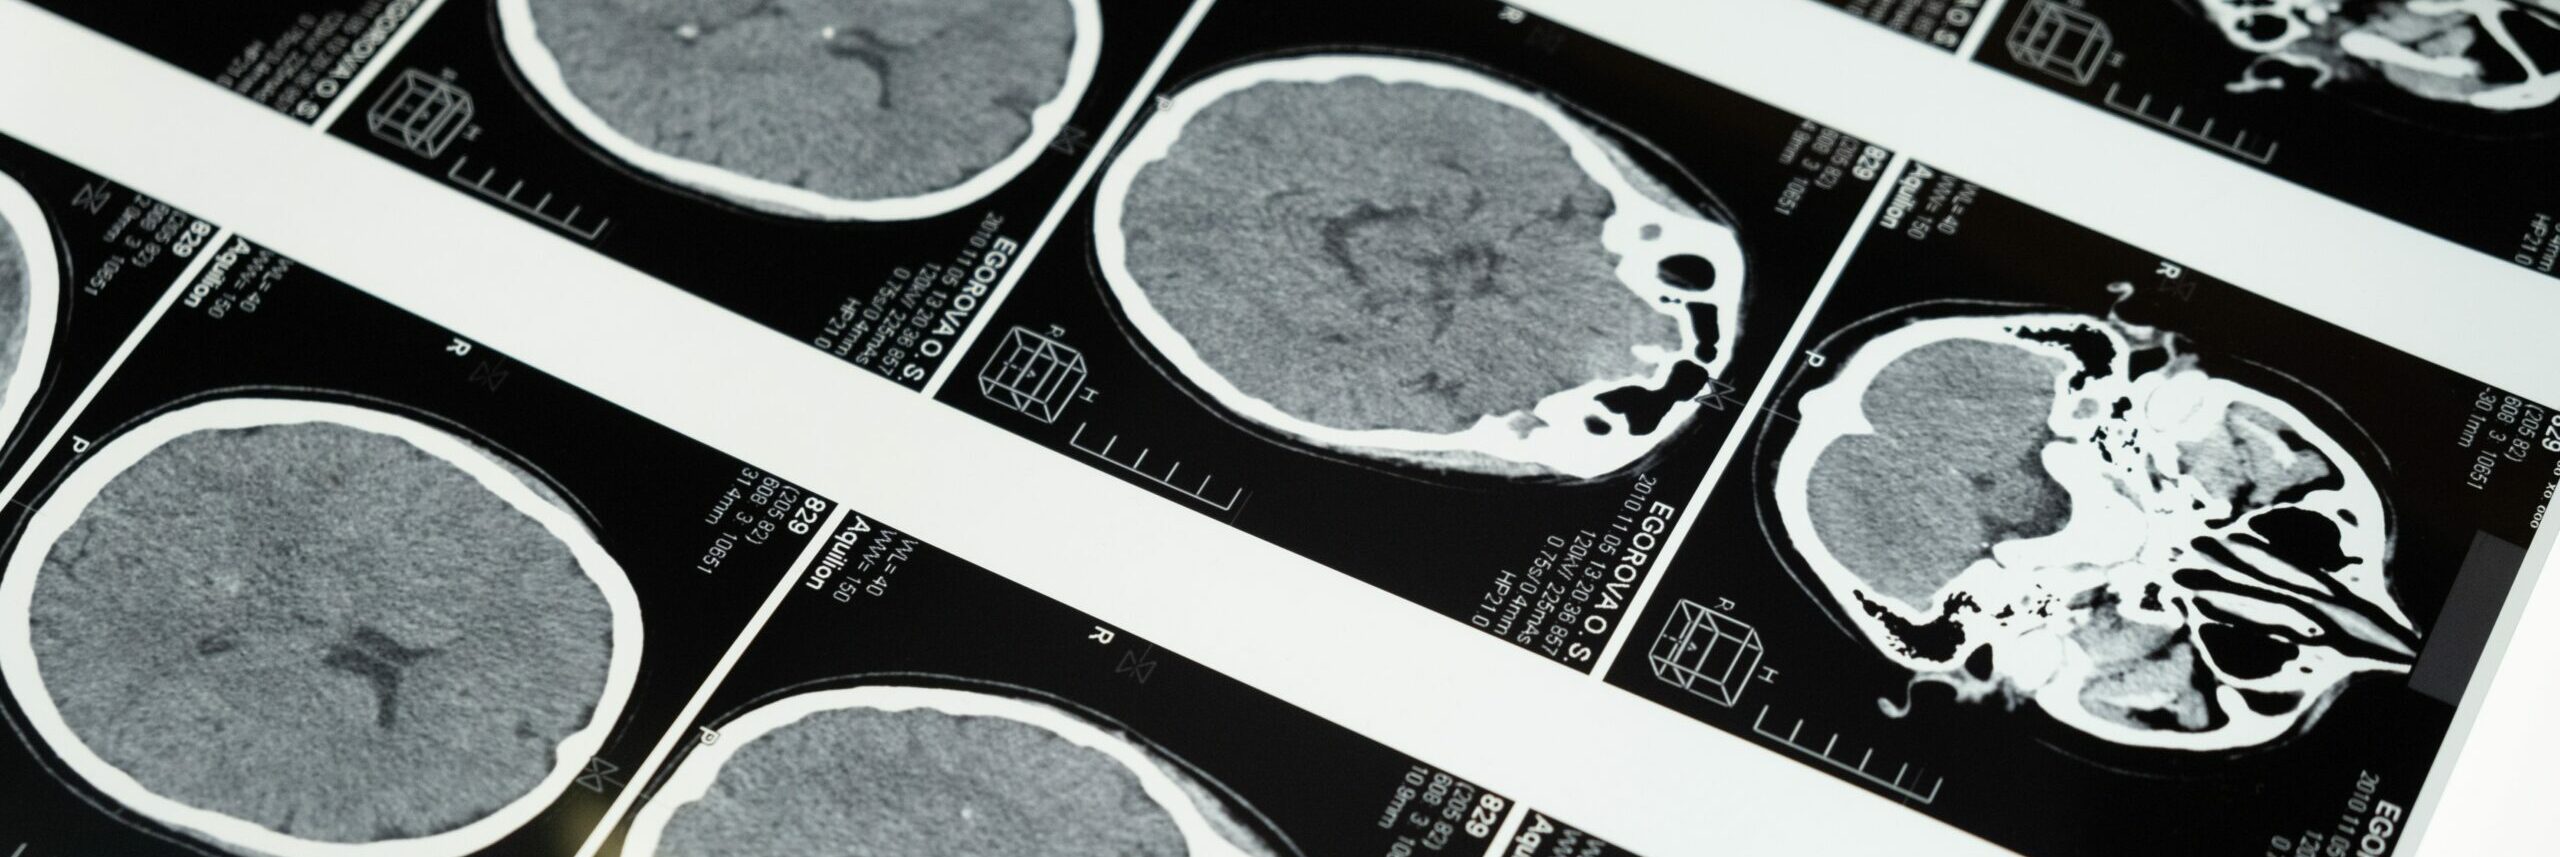 Brain scan MRI